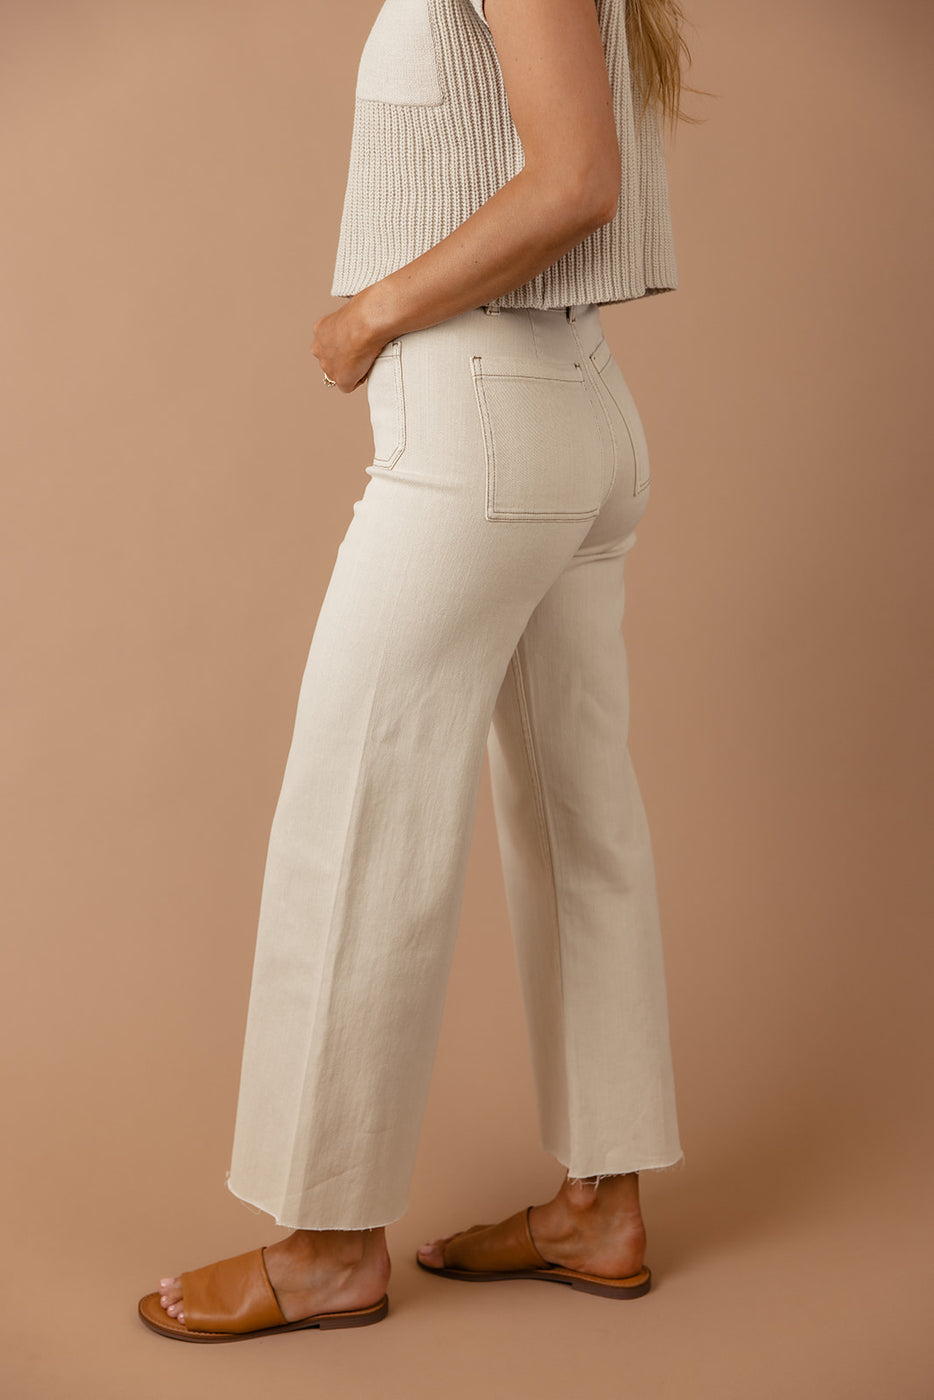 a woman wearing a white pants